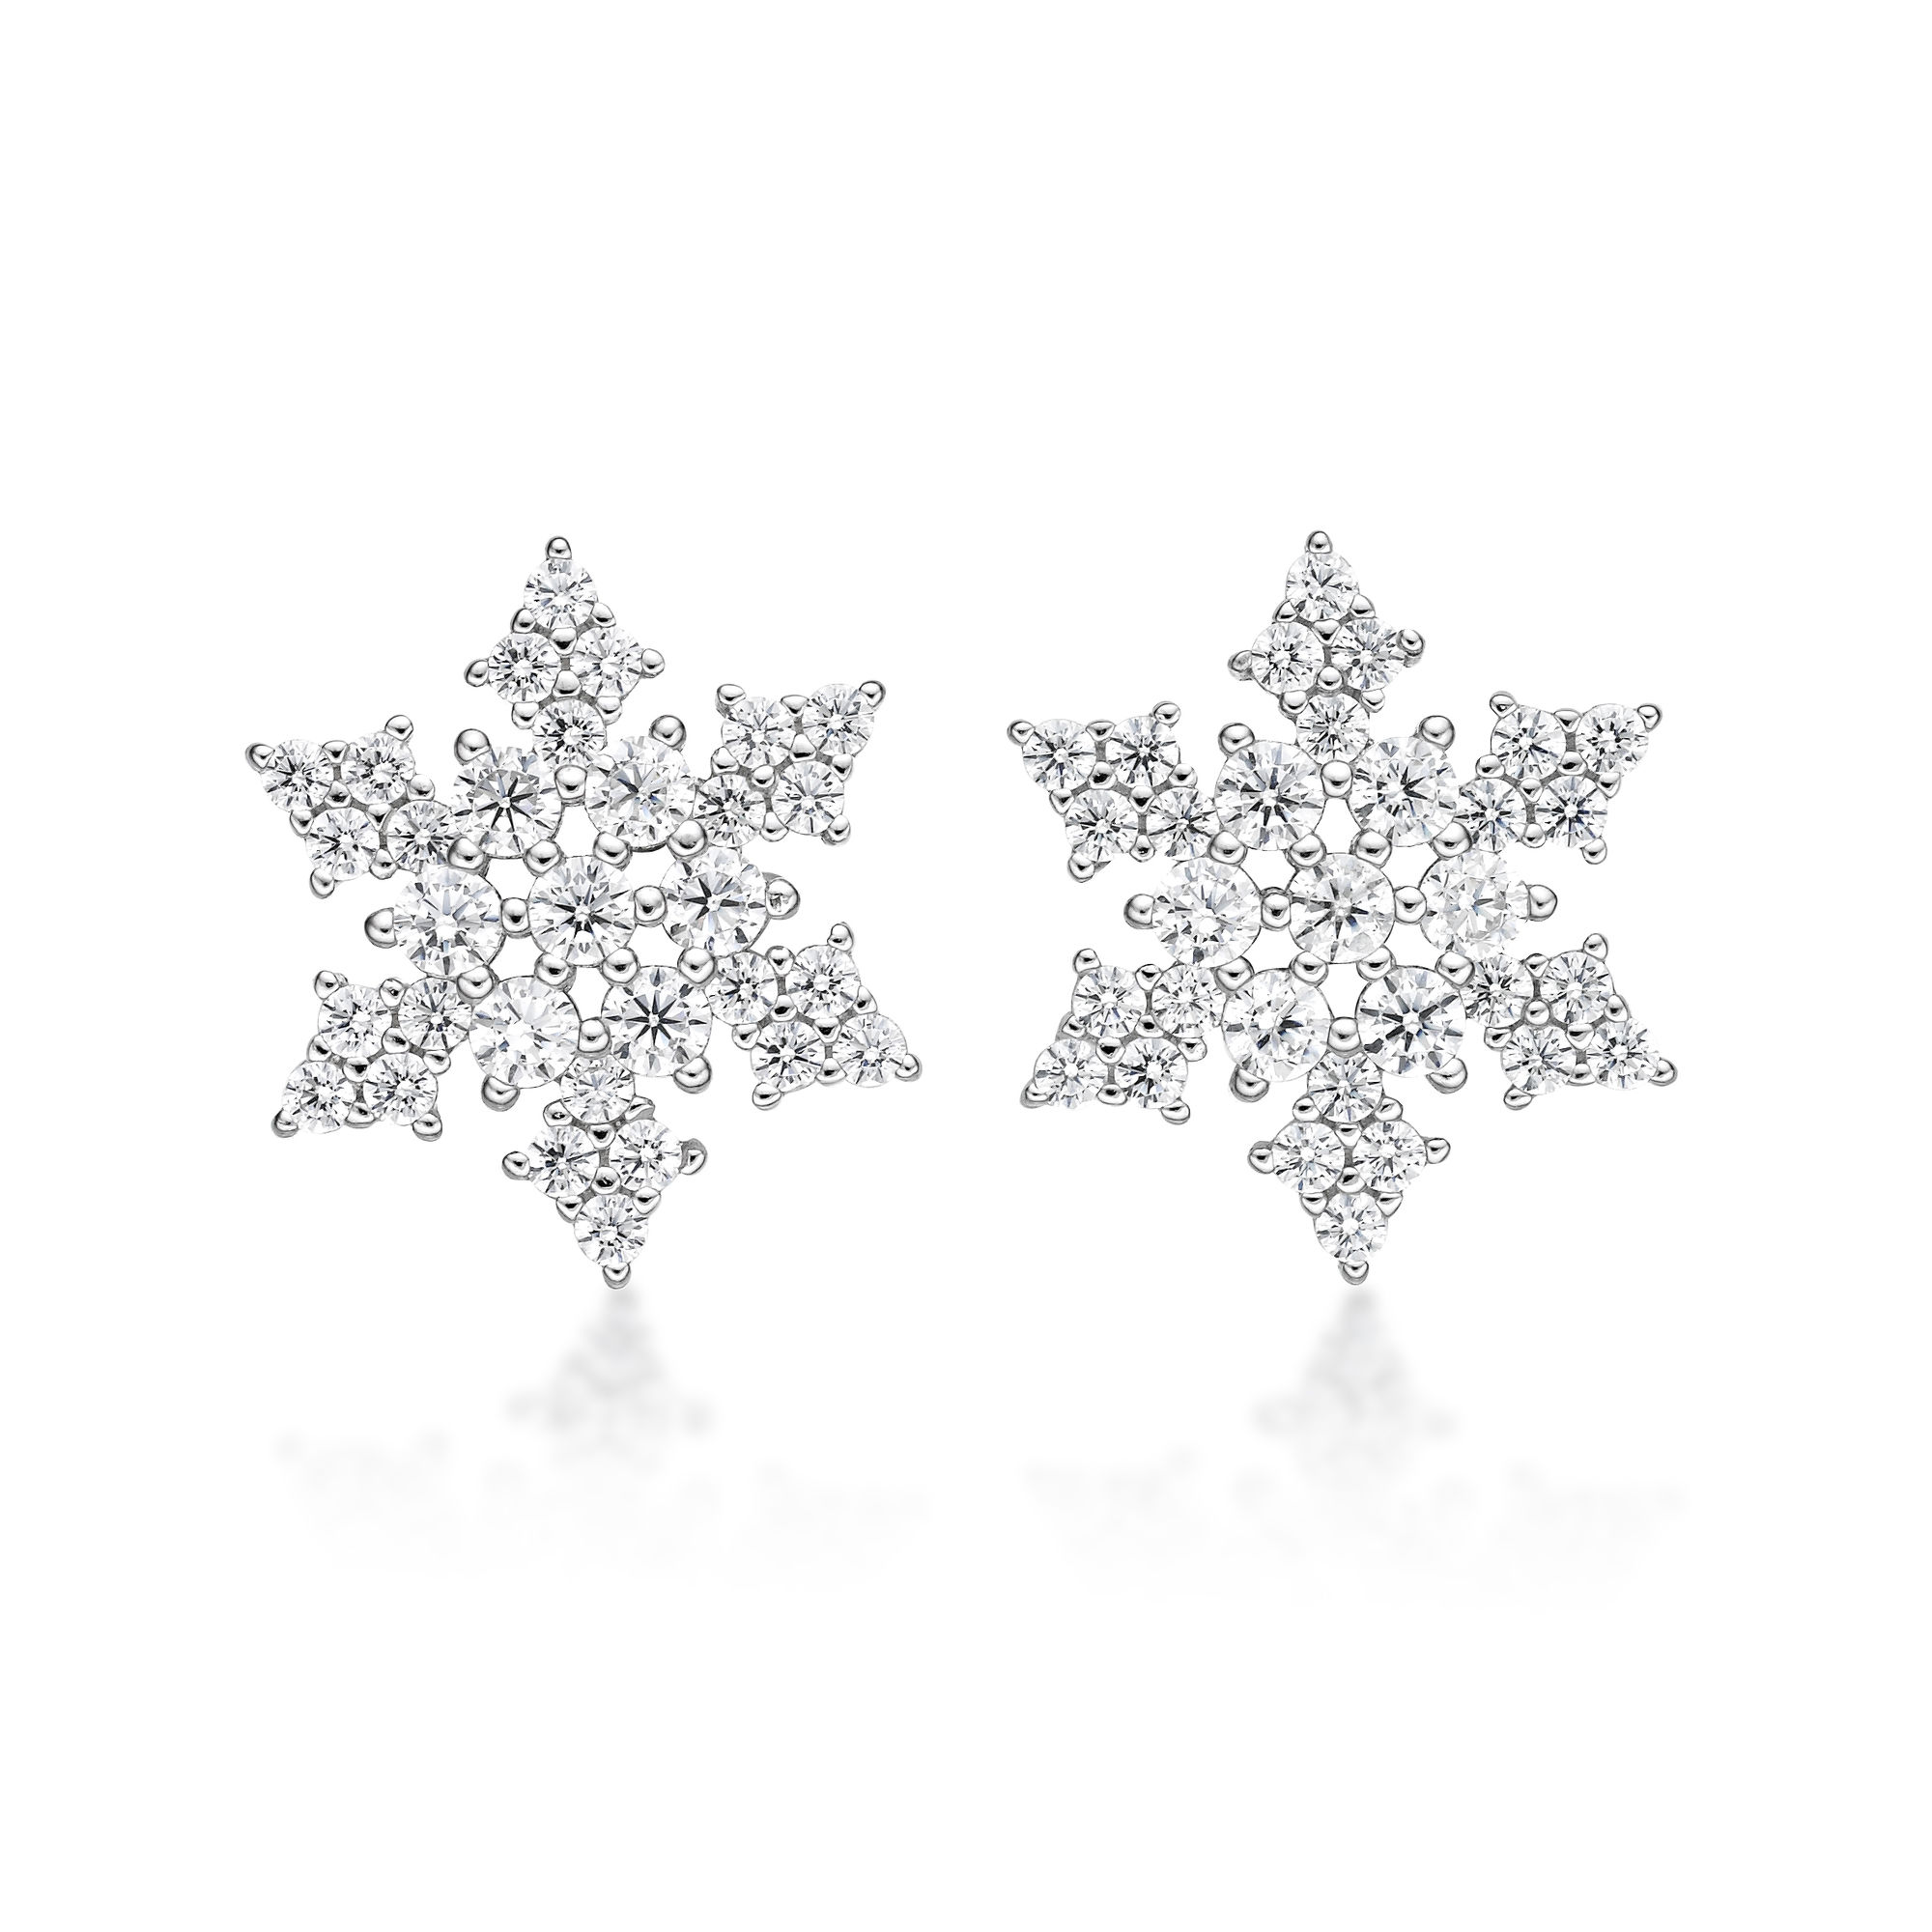 49182-earrings-fashion-jewelry-sterling-silver-49182-3.jpg